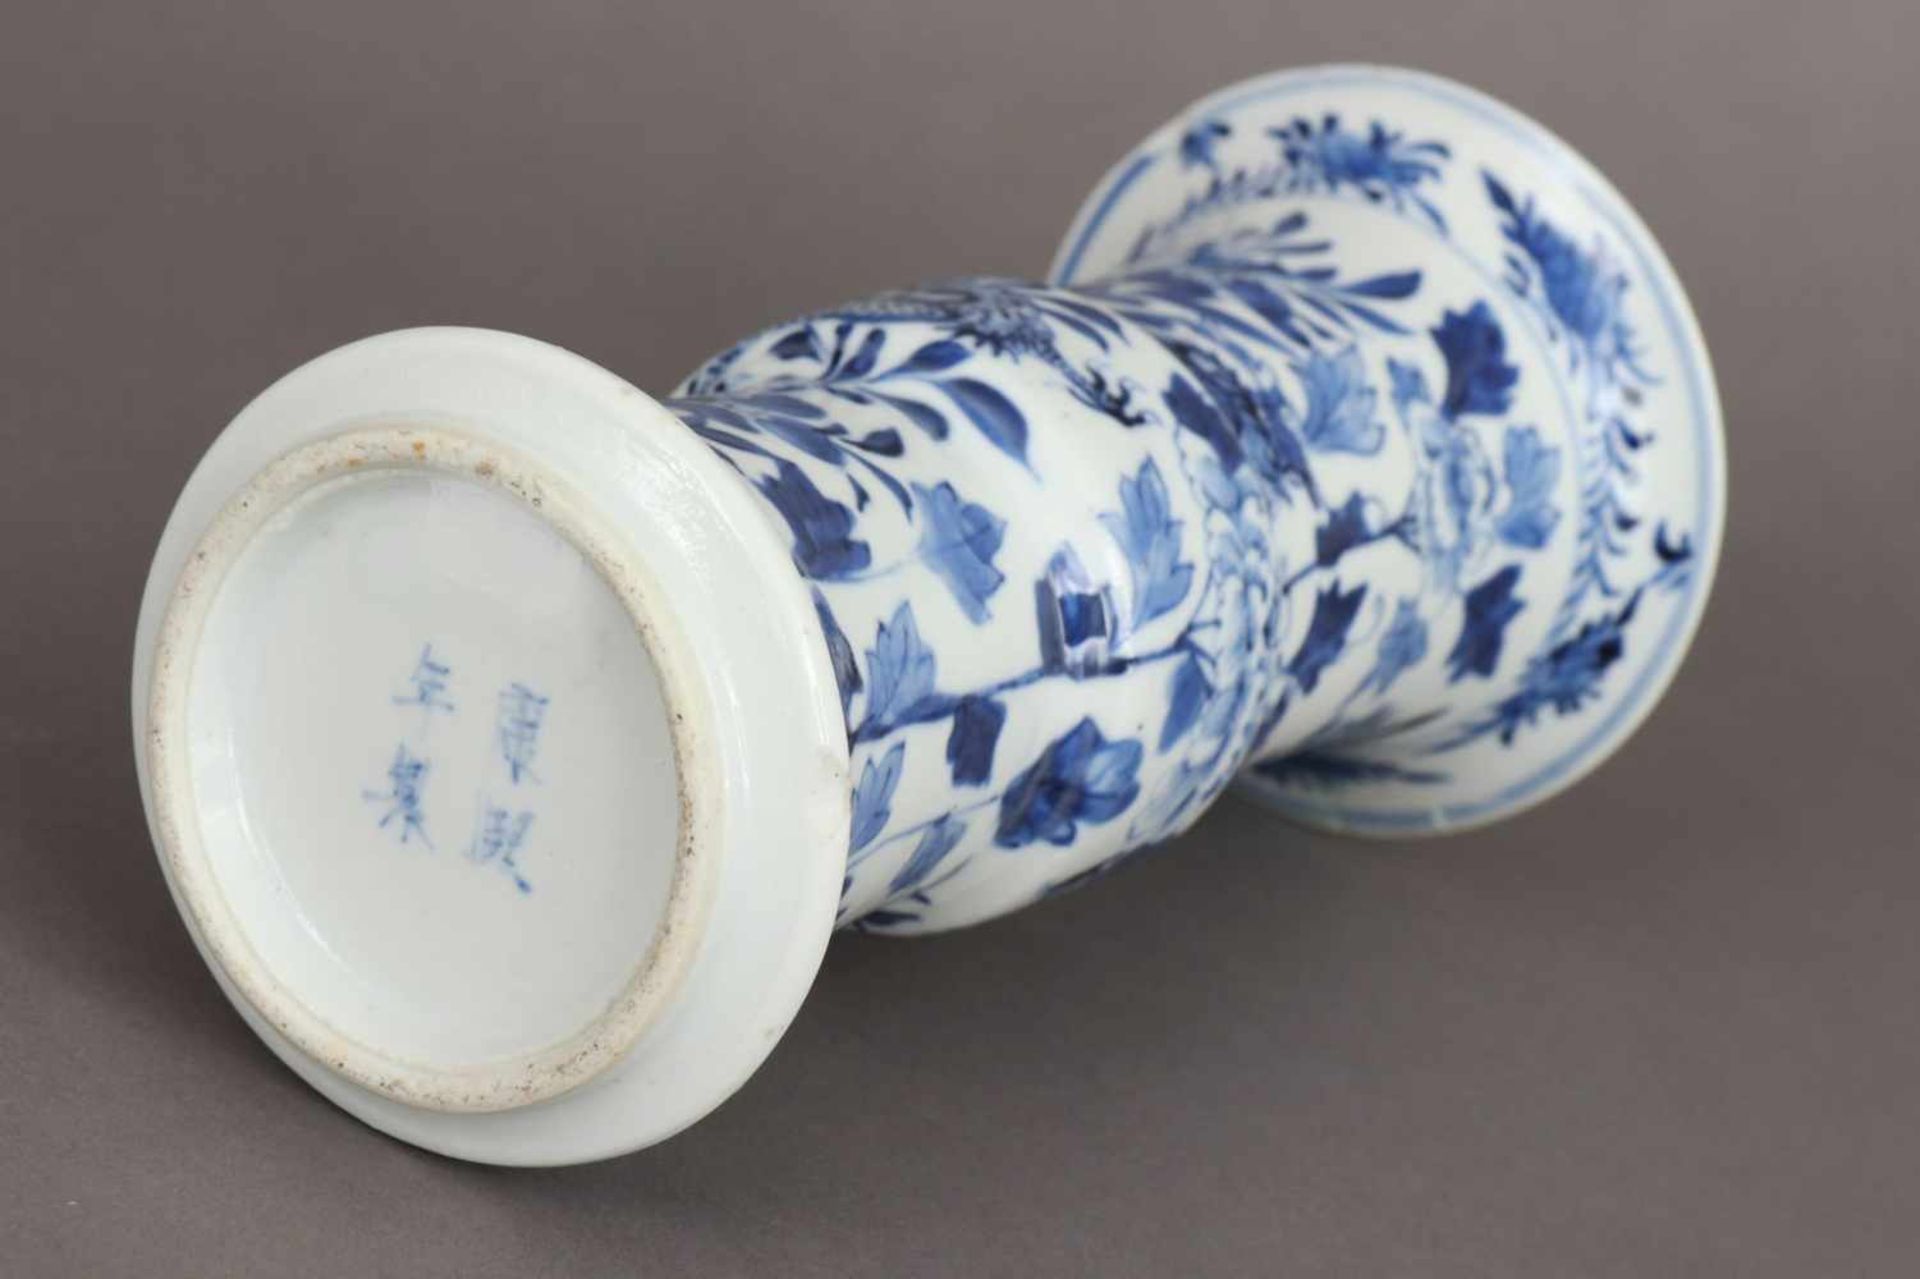 Chinesische Porzellanvase in Gu-Form Blaumalerei auf hellem Grund ¨Drache und Pflanzen¨, - Bild 3 aus 6